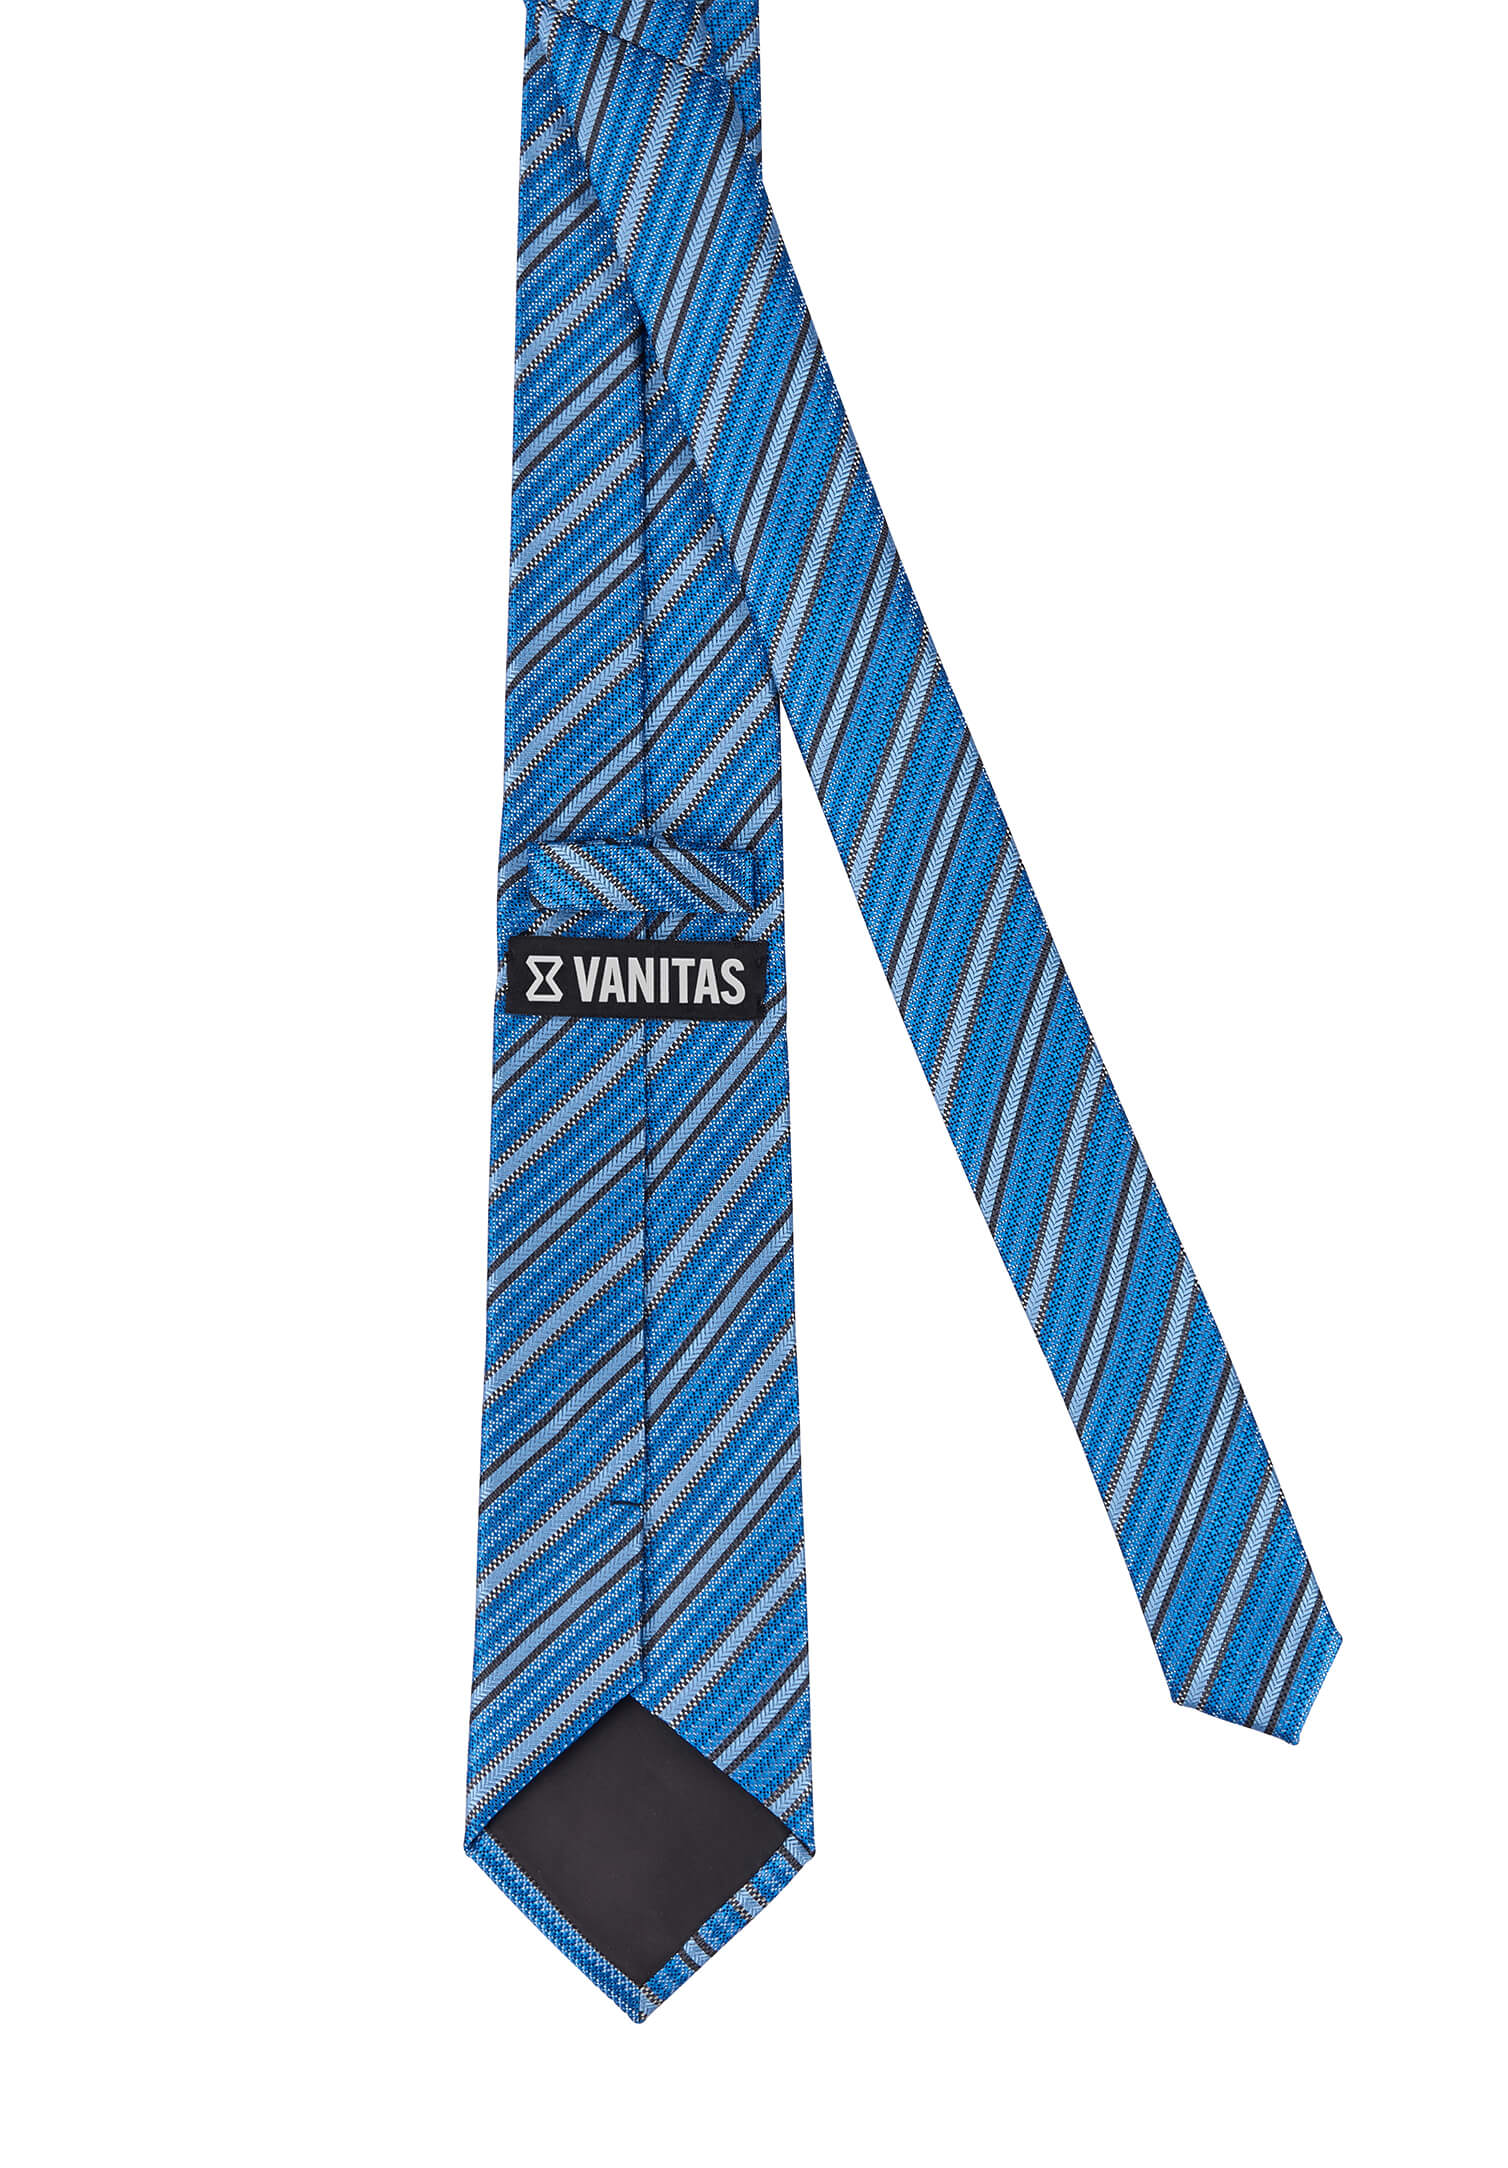 Krawatte modische Streifen petrol/grau/anthrazit